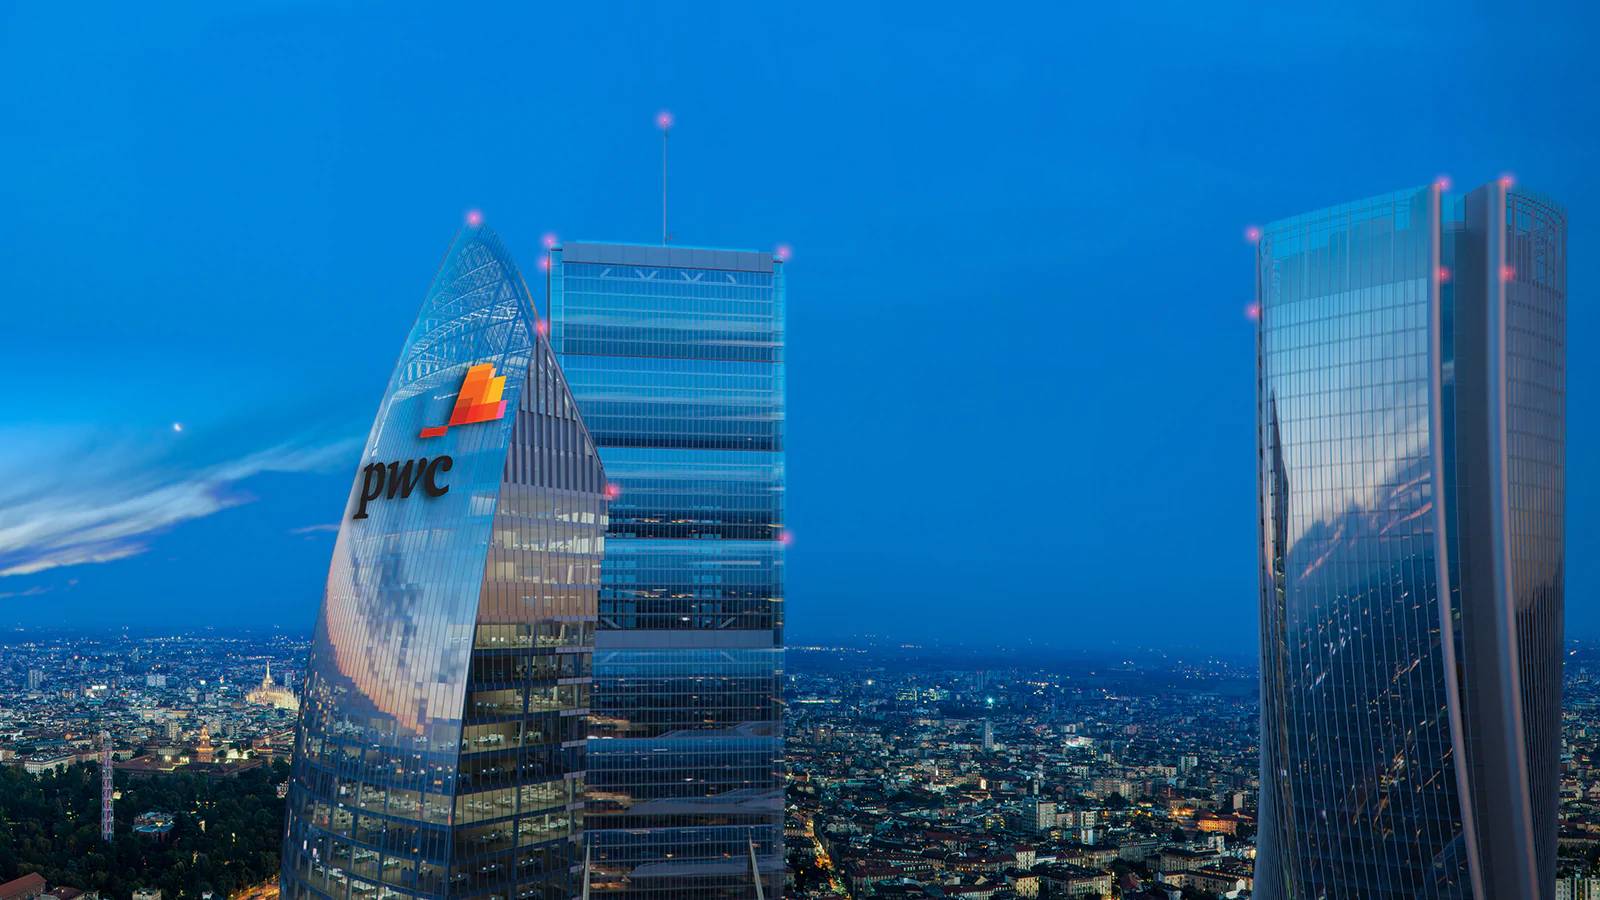 Photo of In arrivo la Torre PwC, il nuovo grattacielo di CityLife che verrà finito nel 2020